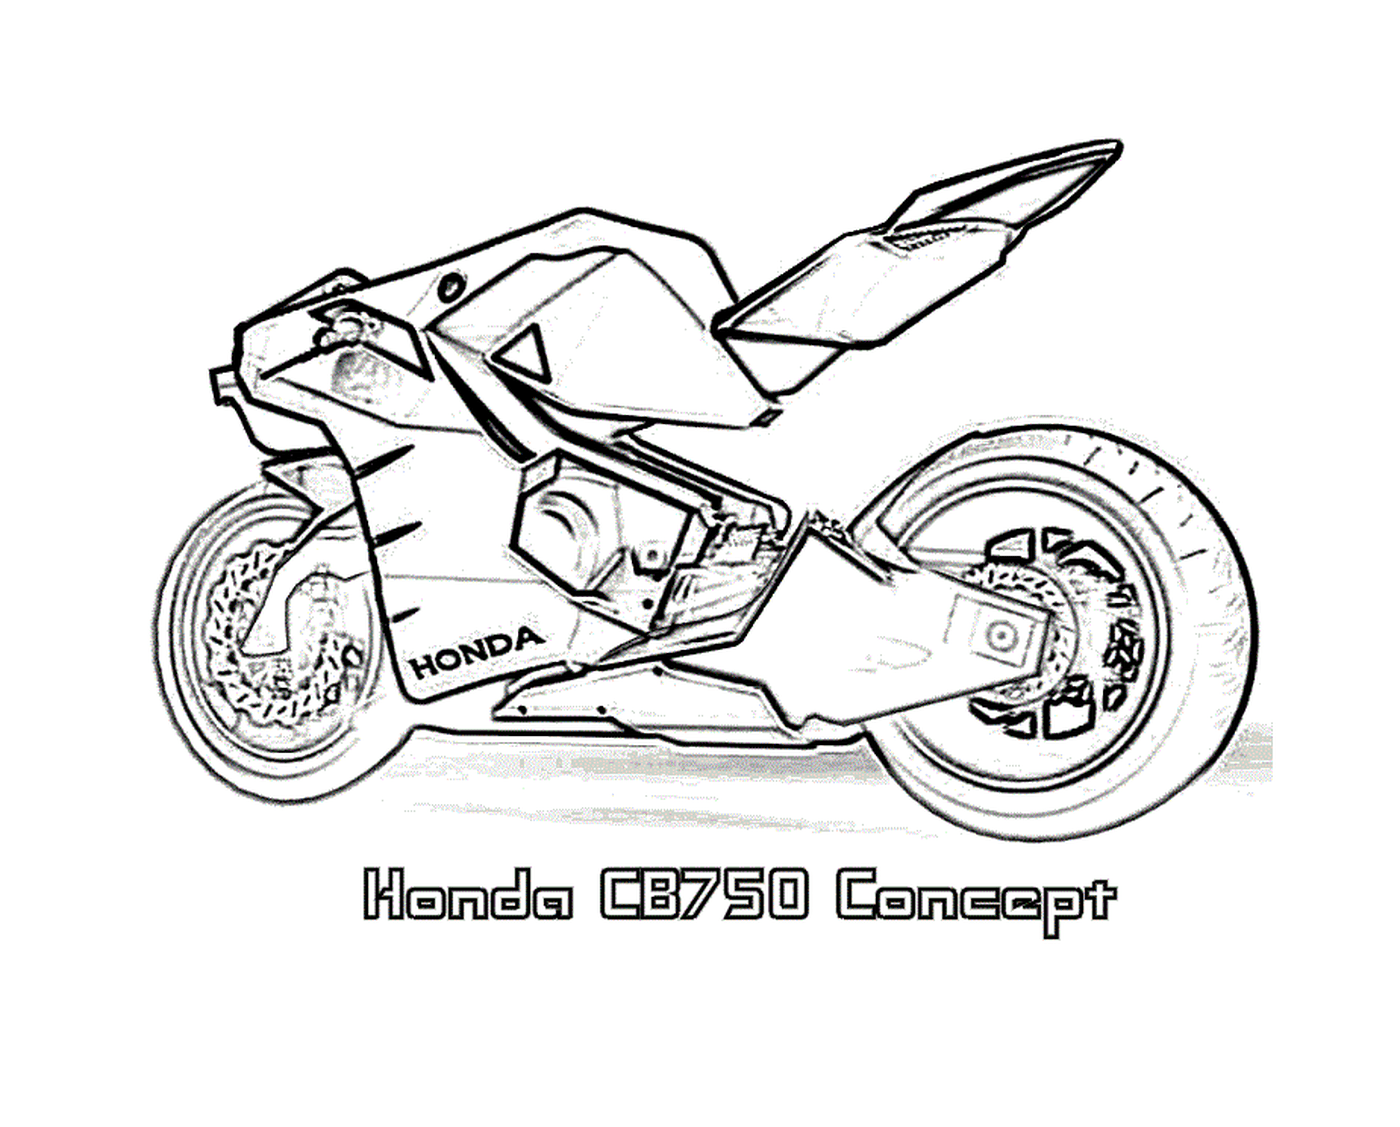  86, Honda CB750 conceito 